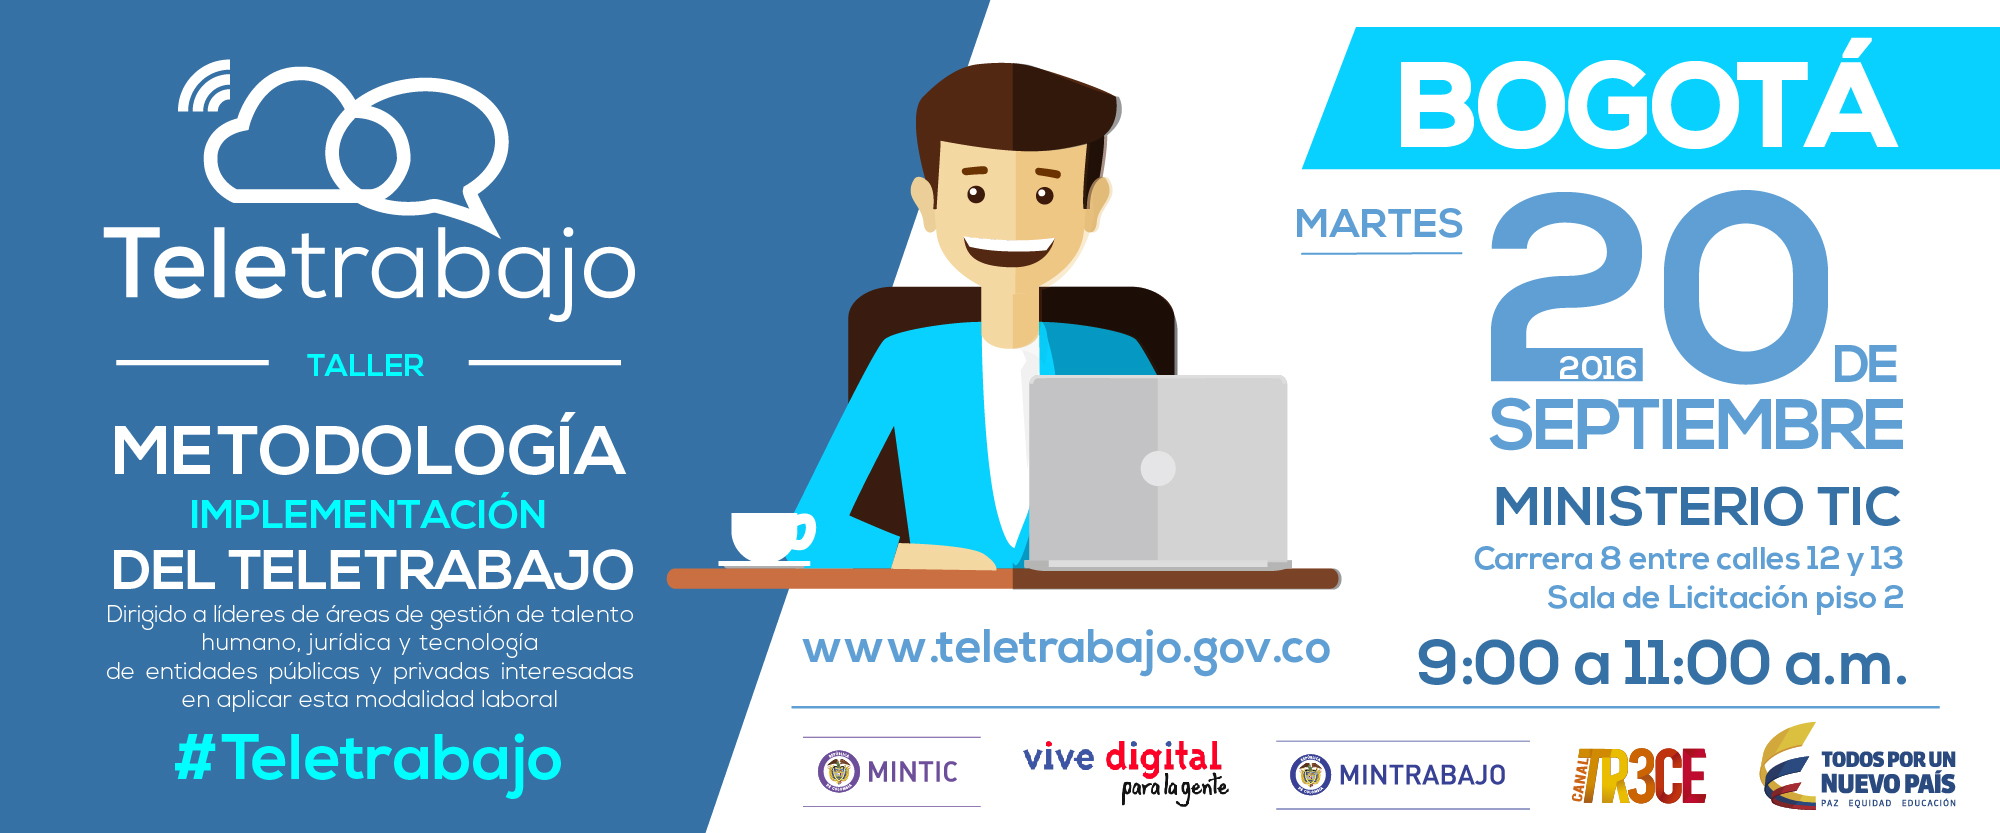 Teletrabajo sigue solidificándose en Bogotá